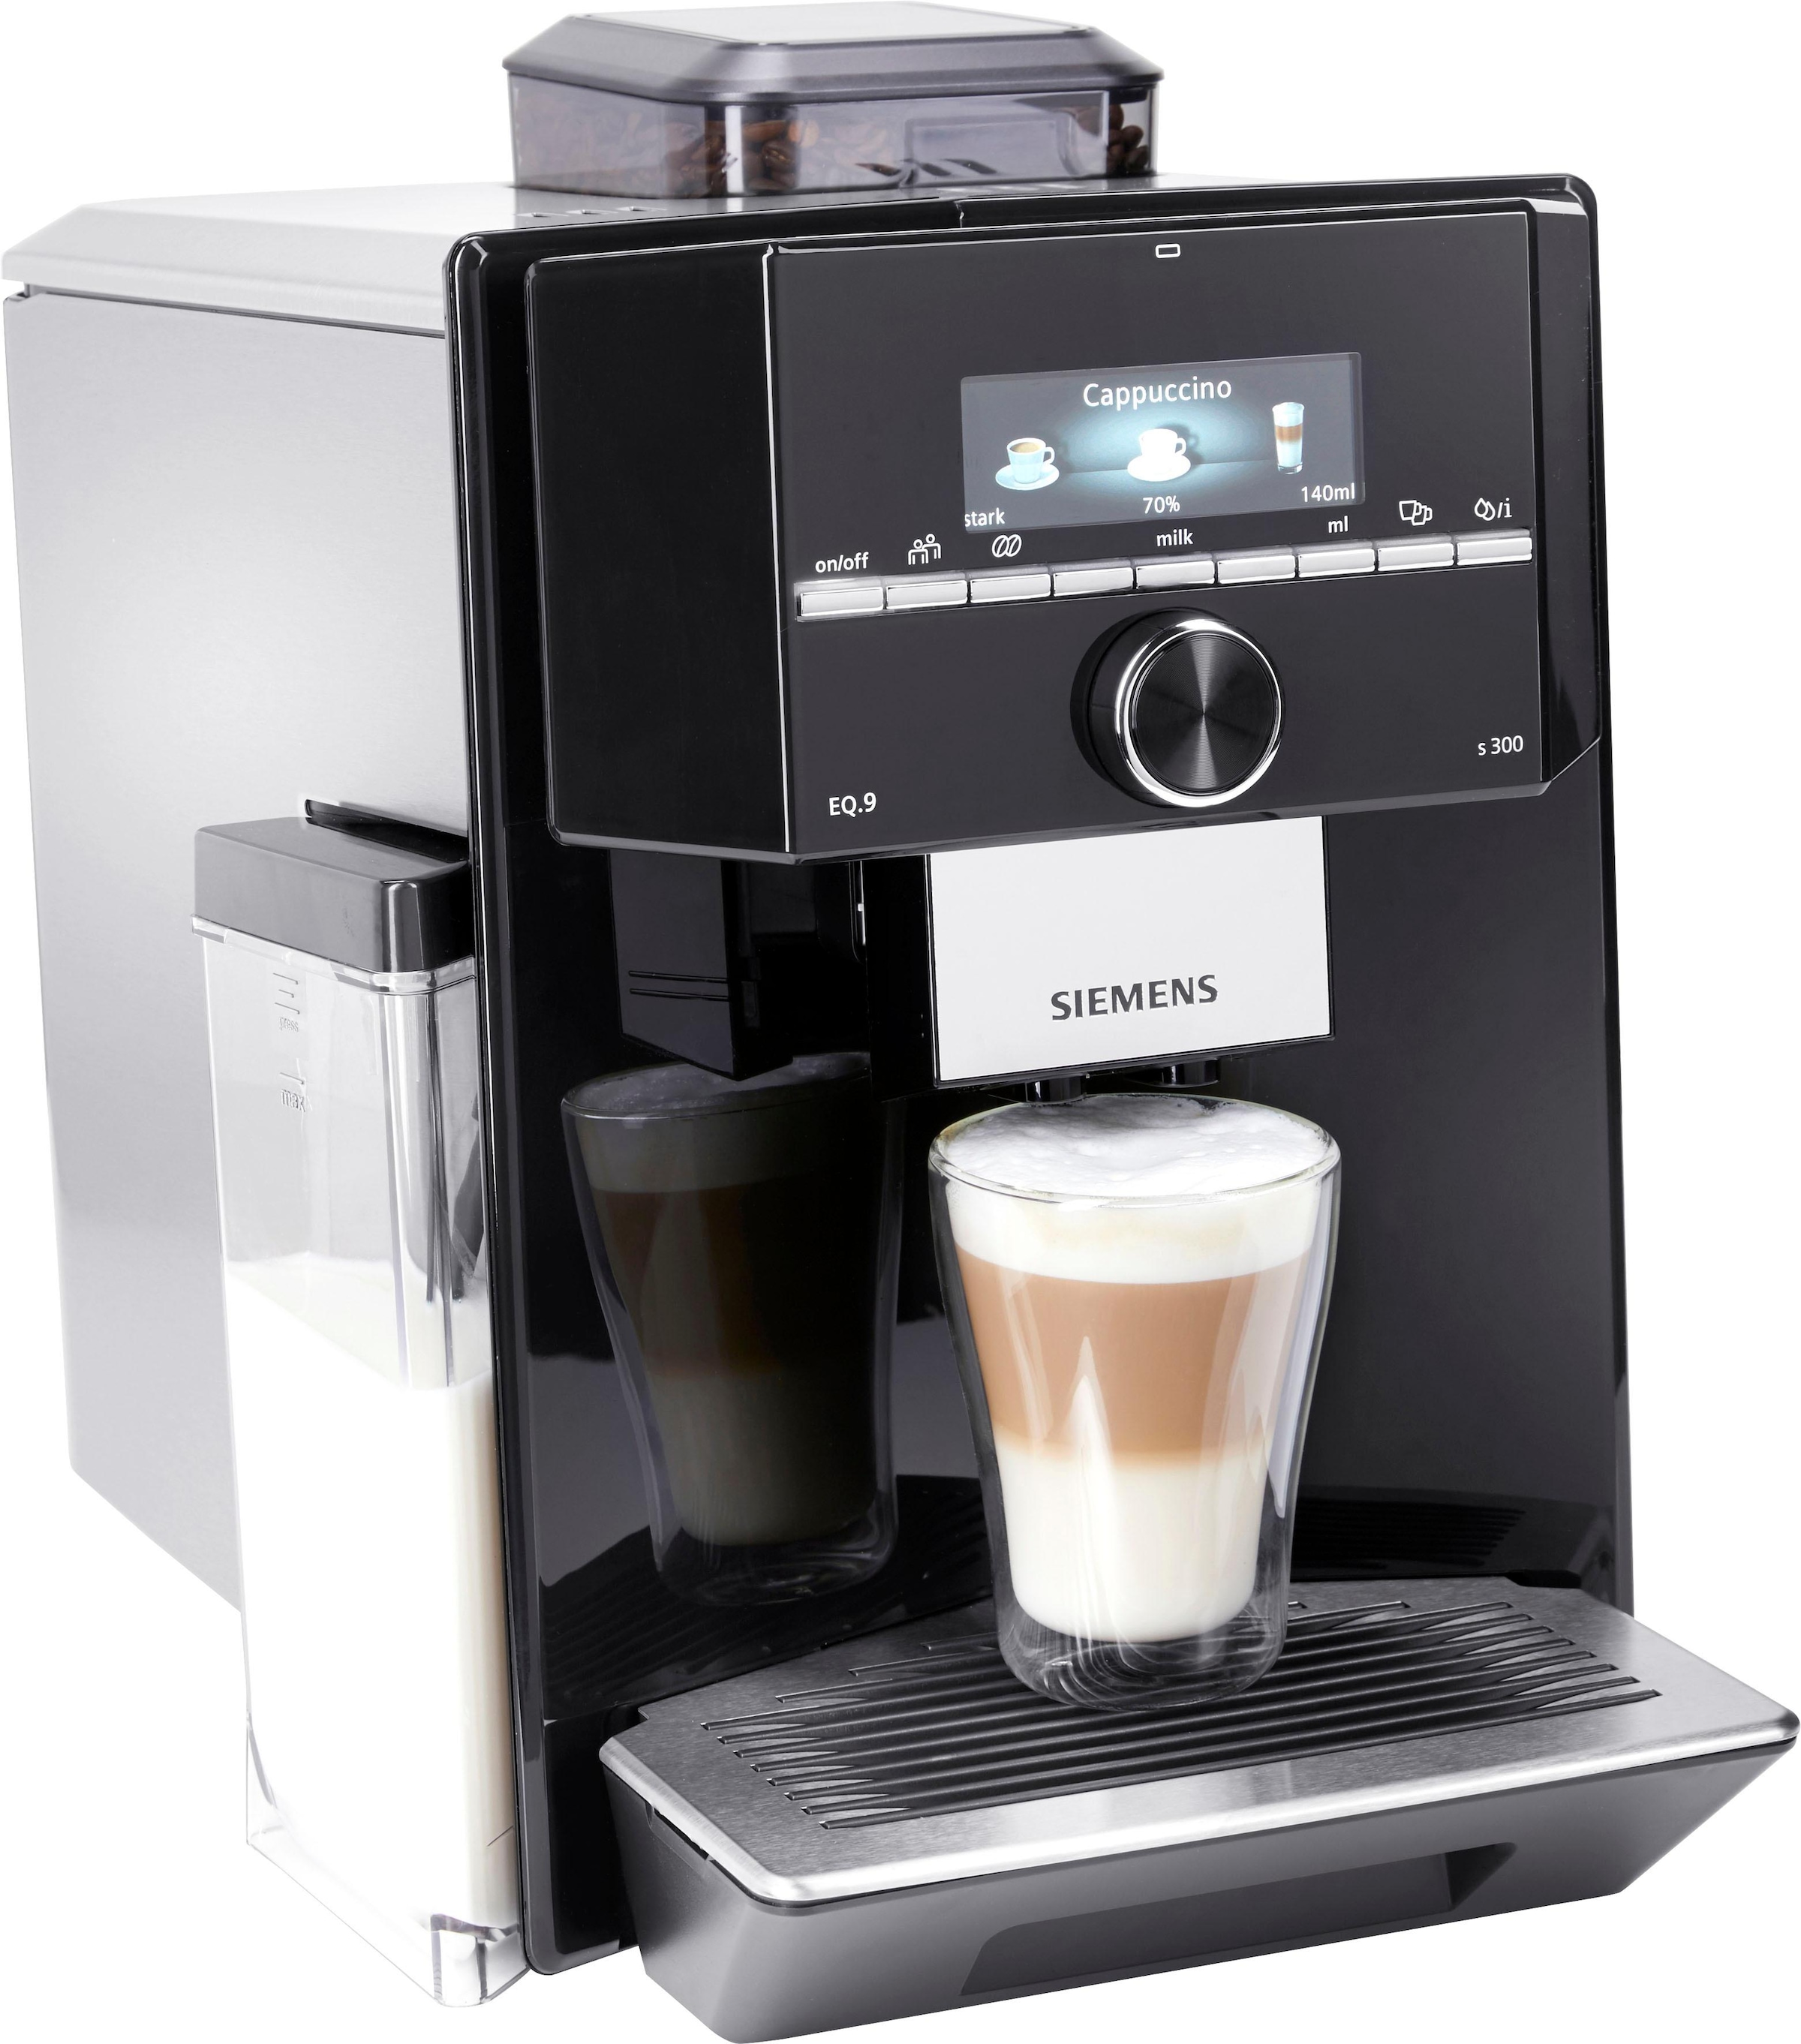 Milchsystem-Reinigung, zu TI923509DE, bei »EQ.9 SIEMENS 6 s300 extra OTTO schwarz/Edelstahl«, Profile bis autom. leise, Kaffeevollautomat